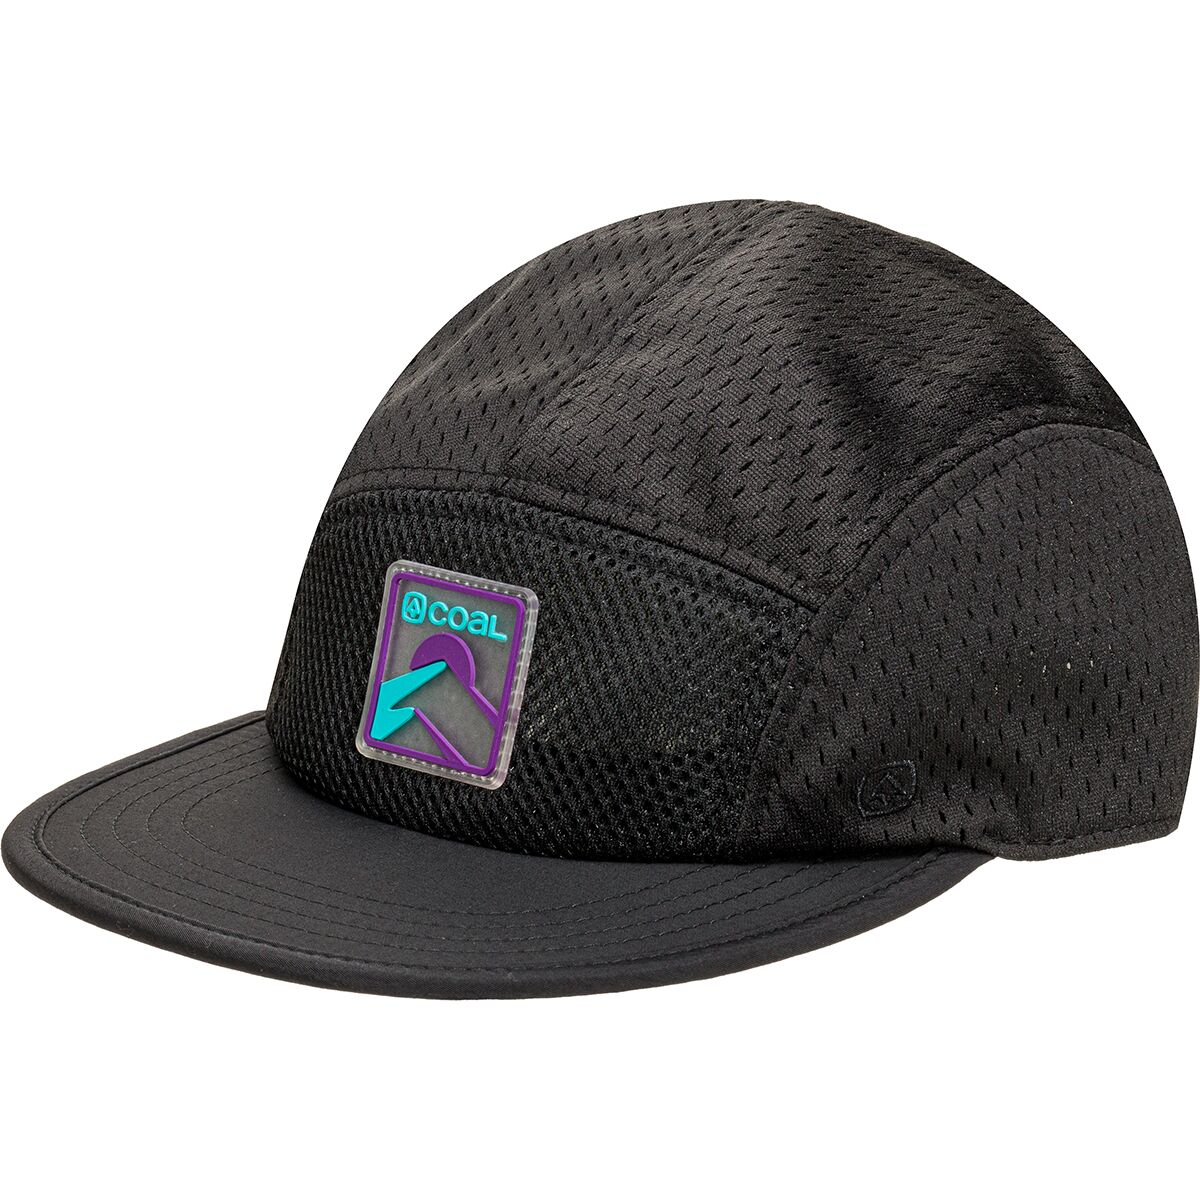 Coal Headwear Dune Hat